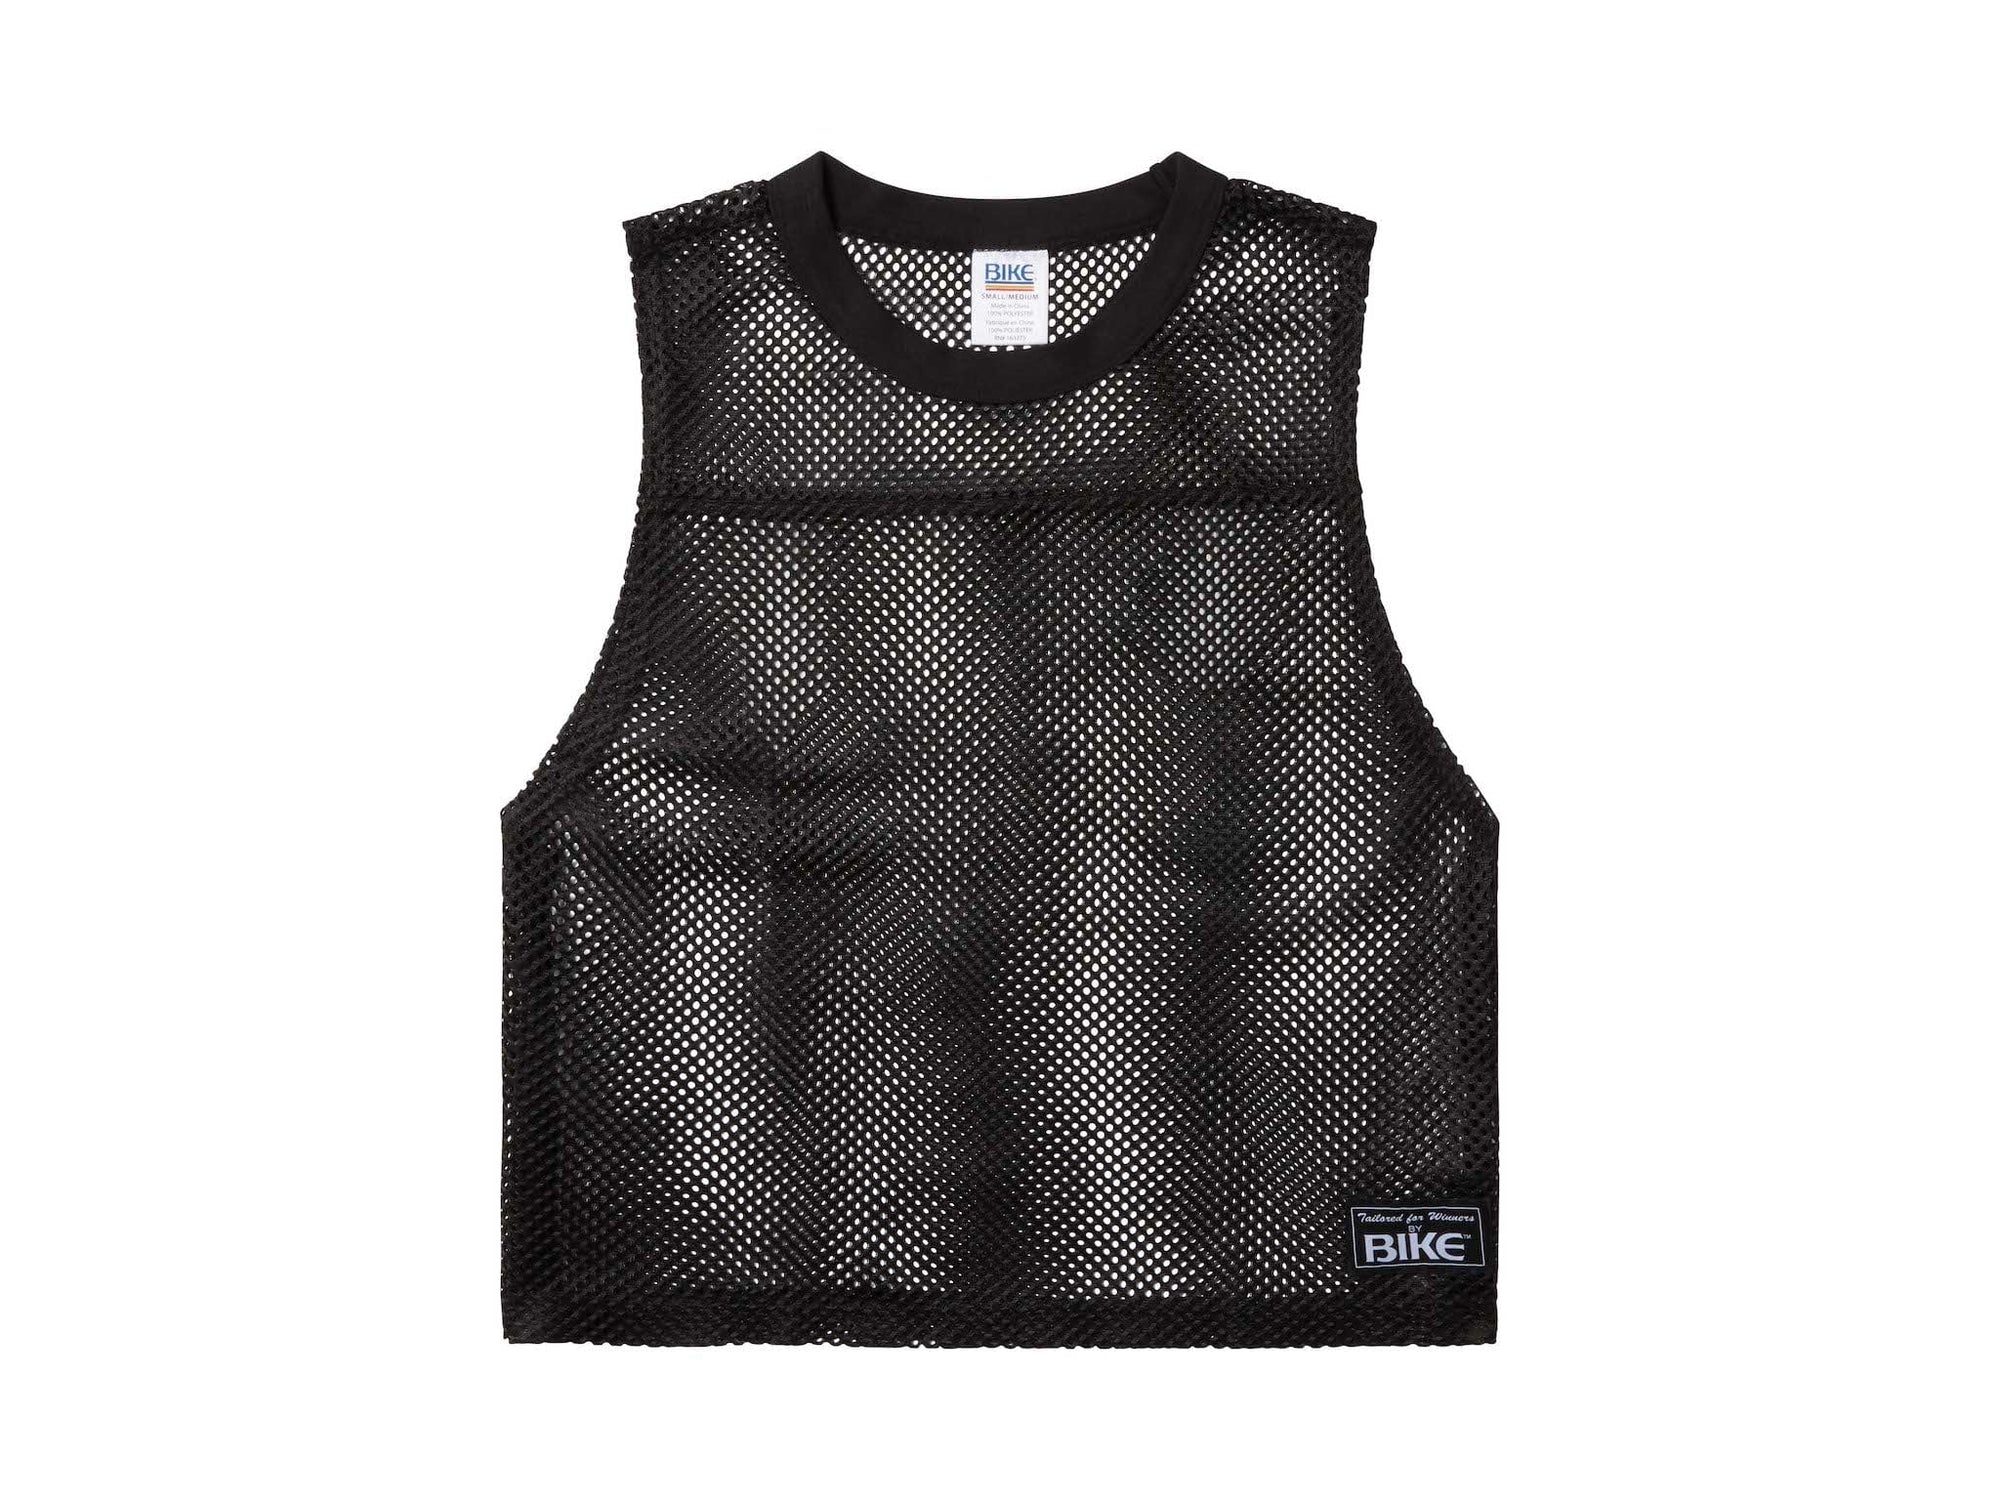 Black BIKE® sleeveless mesh shirt